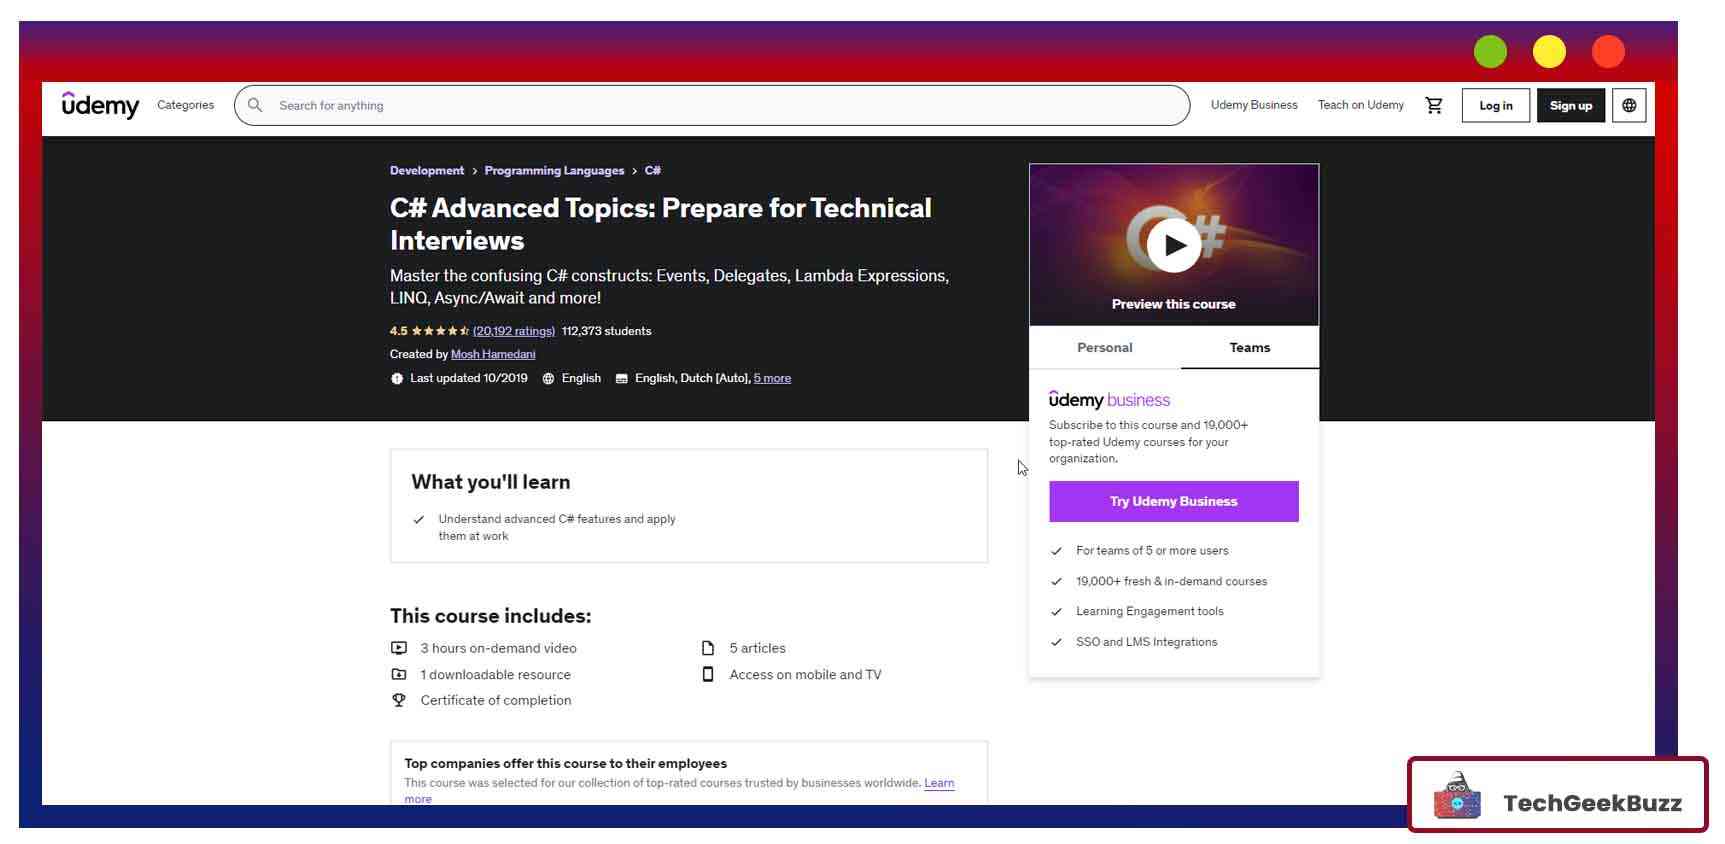 C# Advanced Topics: Prepare for Technical Interviews